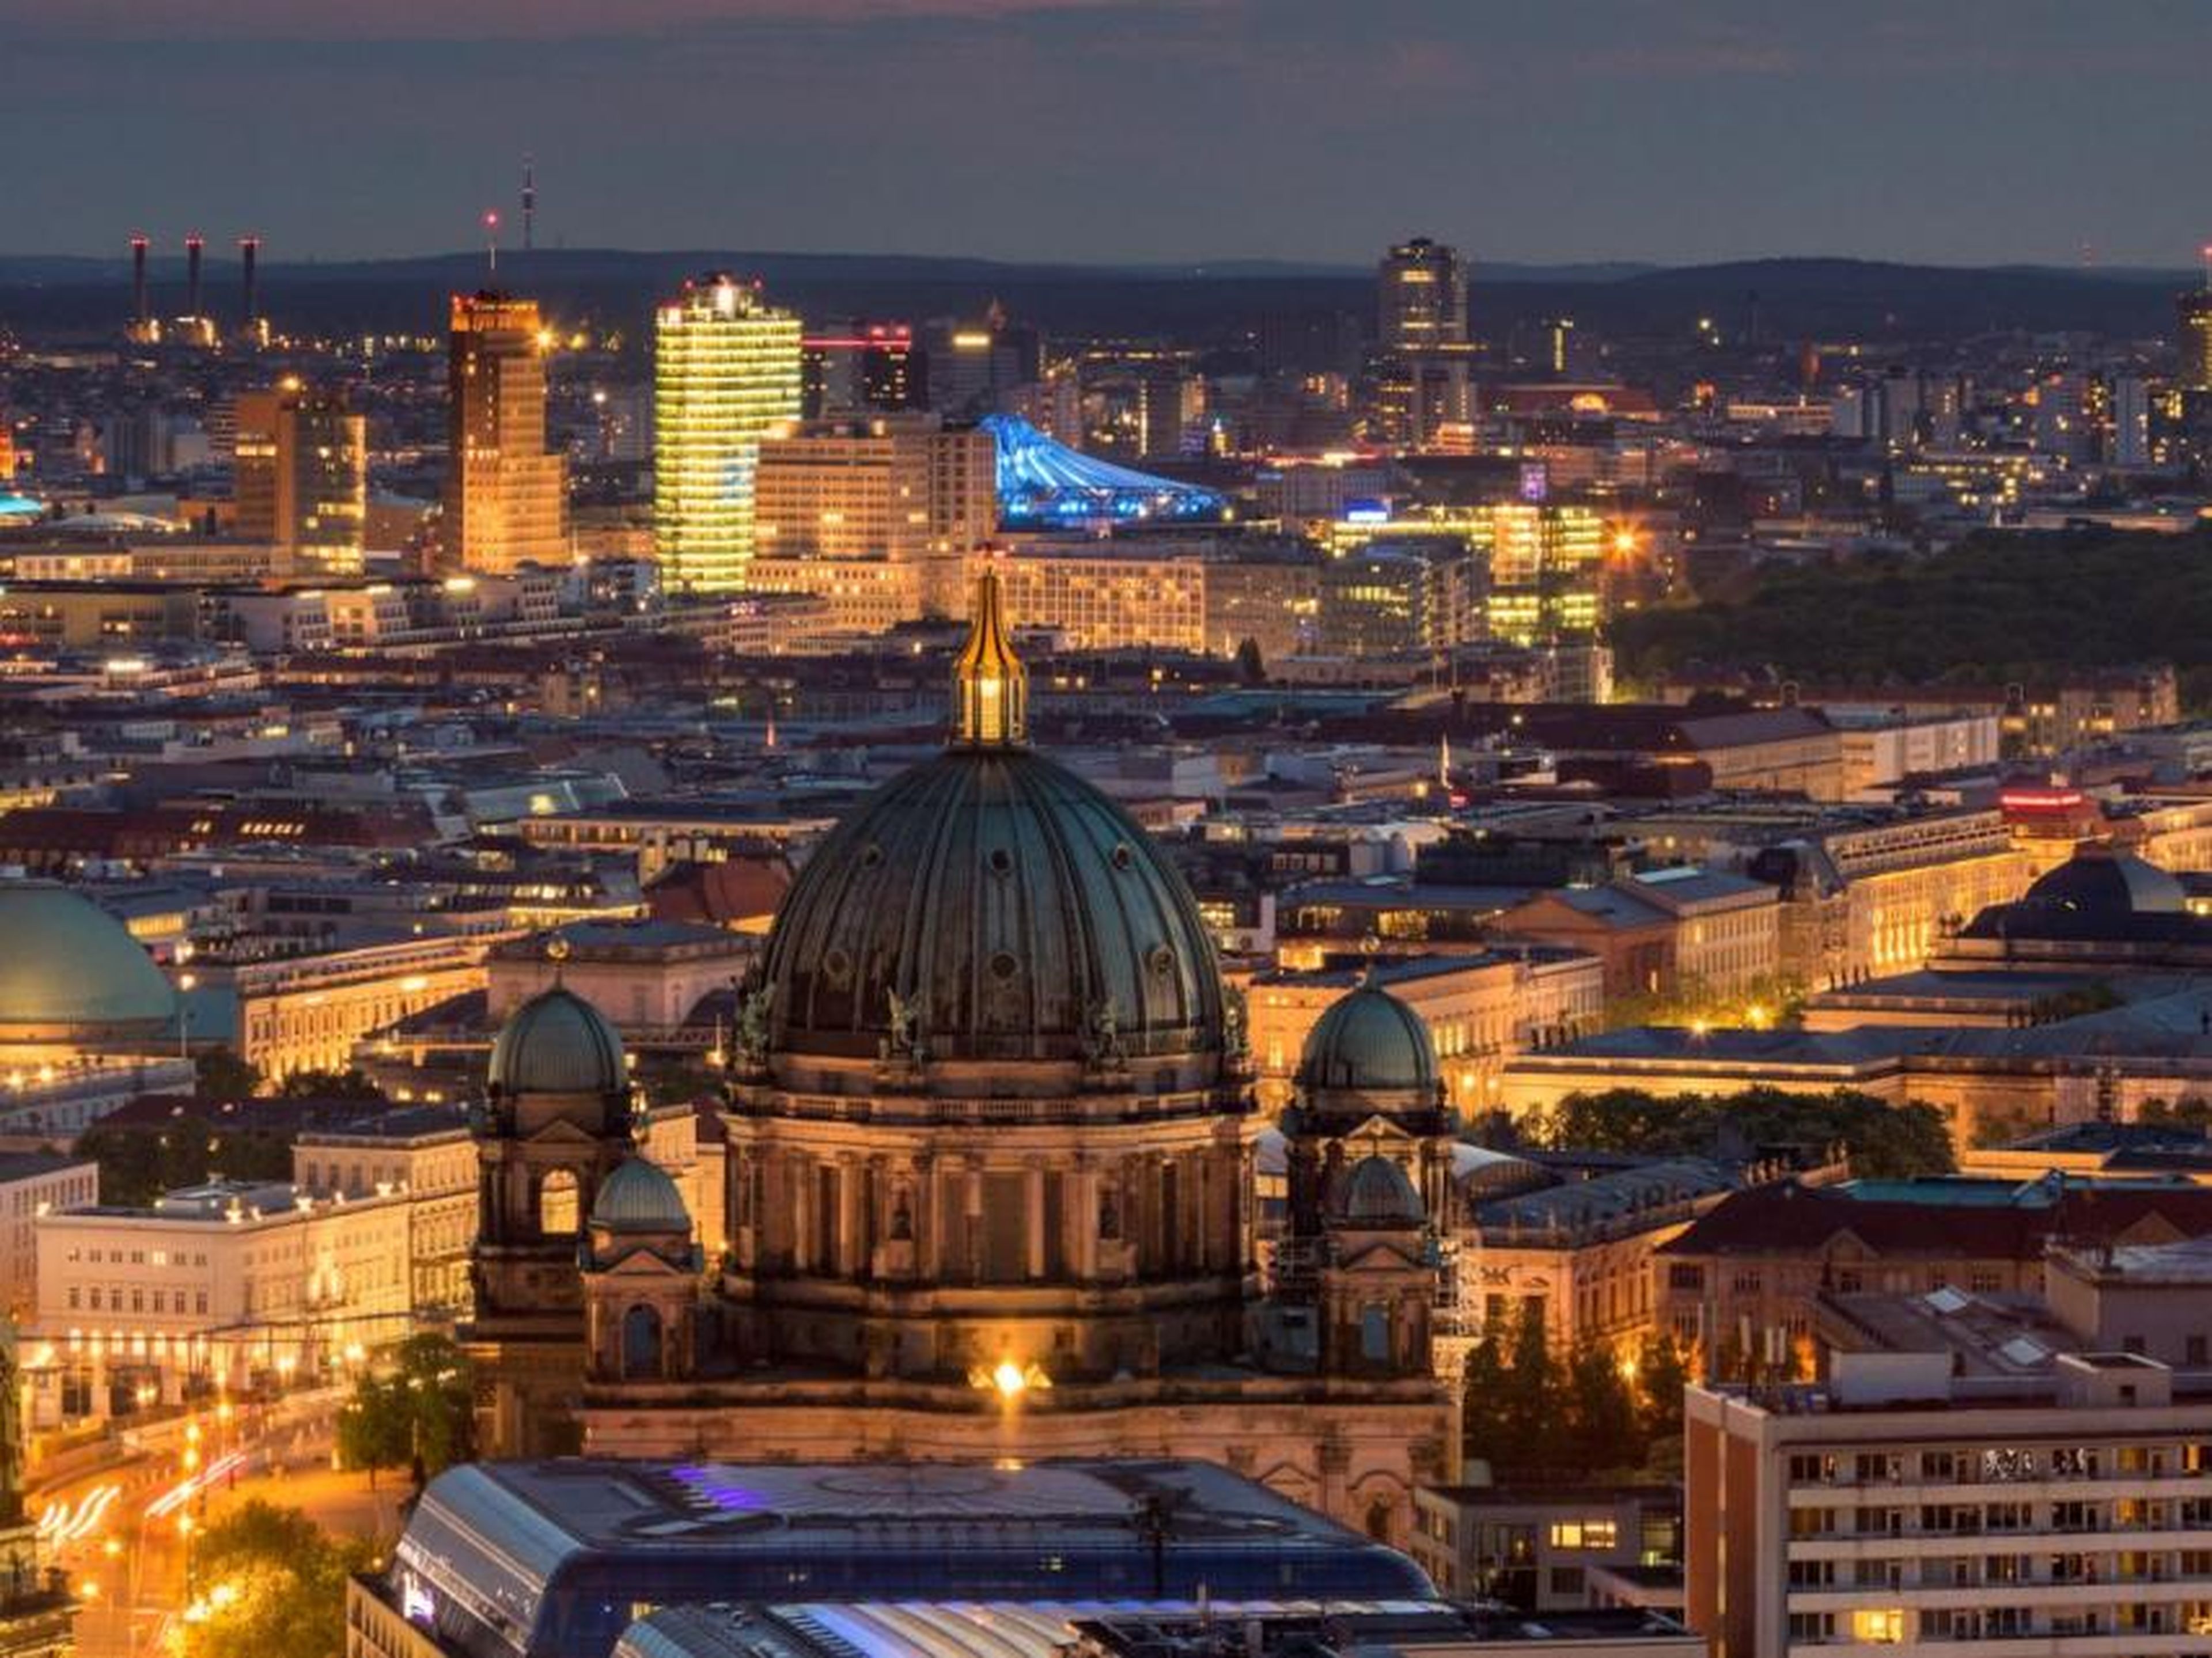 Vista aérea de la ciudad de Berlín. VanderWolf Images/Shutterstock